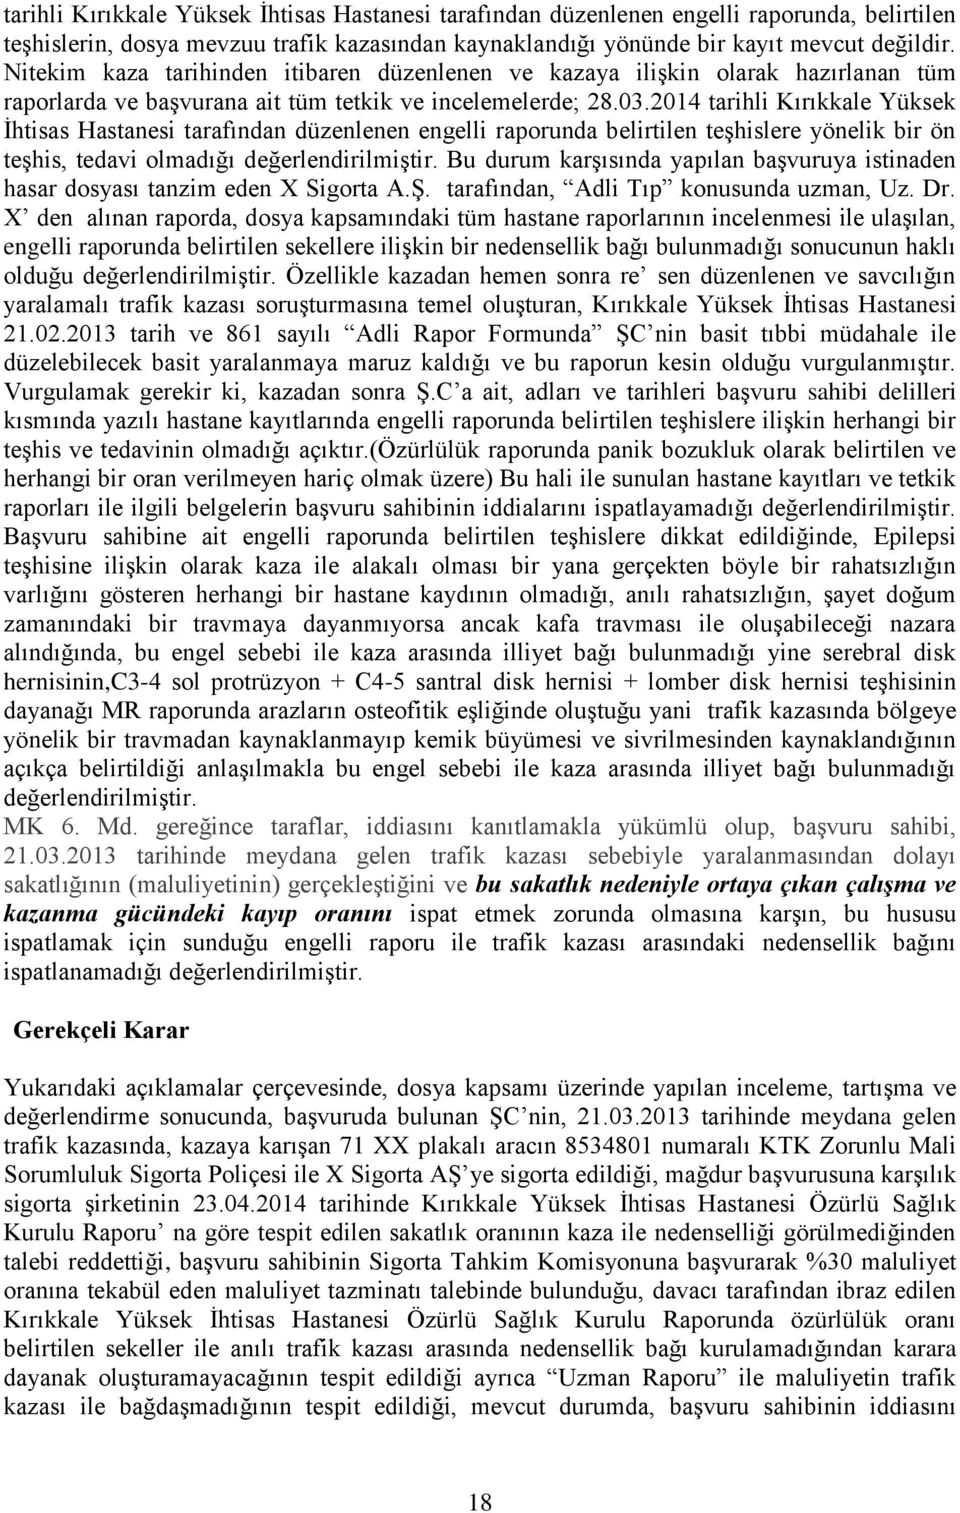 2014 tarihli Kırıkkale Yüksek İhtisas Hastanesi tarafından düzenlenen engelli raporunda belirtilen teşhislere yönelik bir ön teşhis, tedavi olmadığı değerlendirilmiştir.